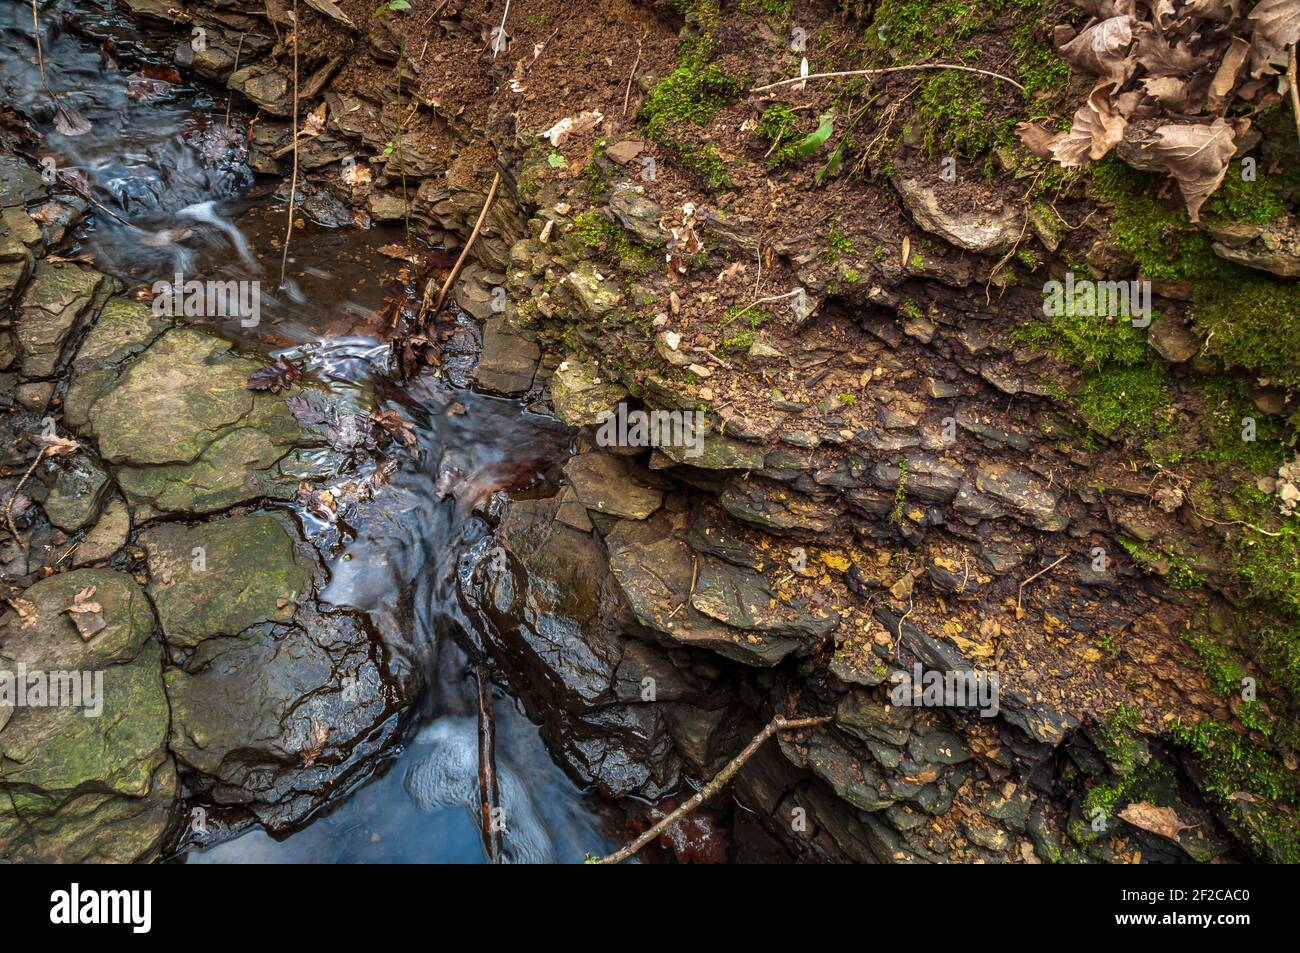 Lits de grès flaggy dépassant de la banque d'argile dans un petit ruisseau près d'une faille dans le bois de Leeshall, ancienne forêt dans la vallée de Gleadless, Sheffield. Banque D'Images